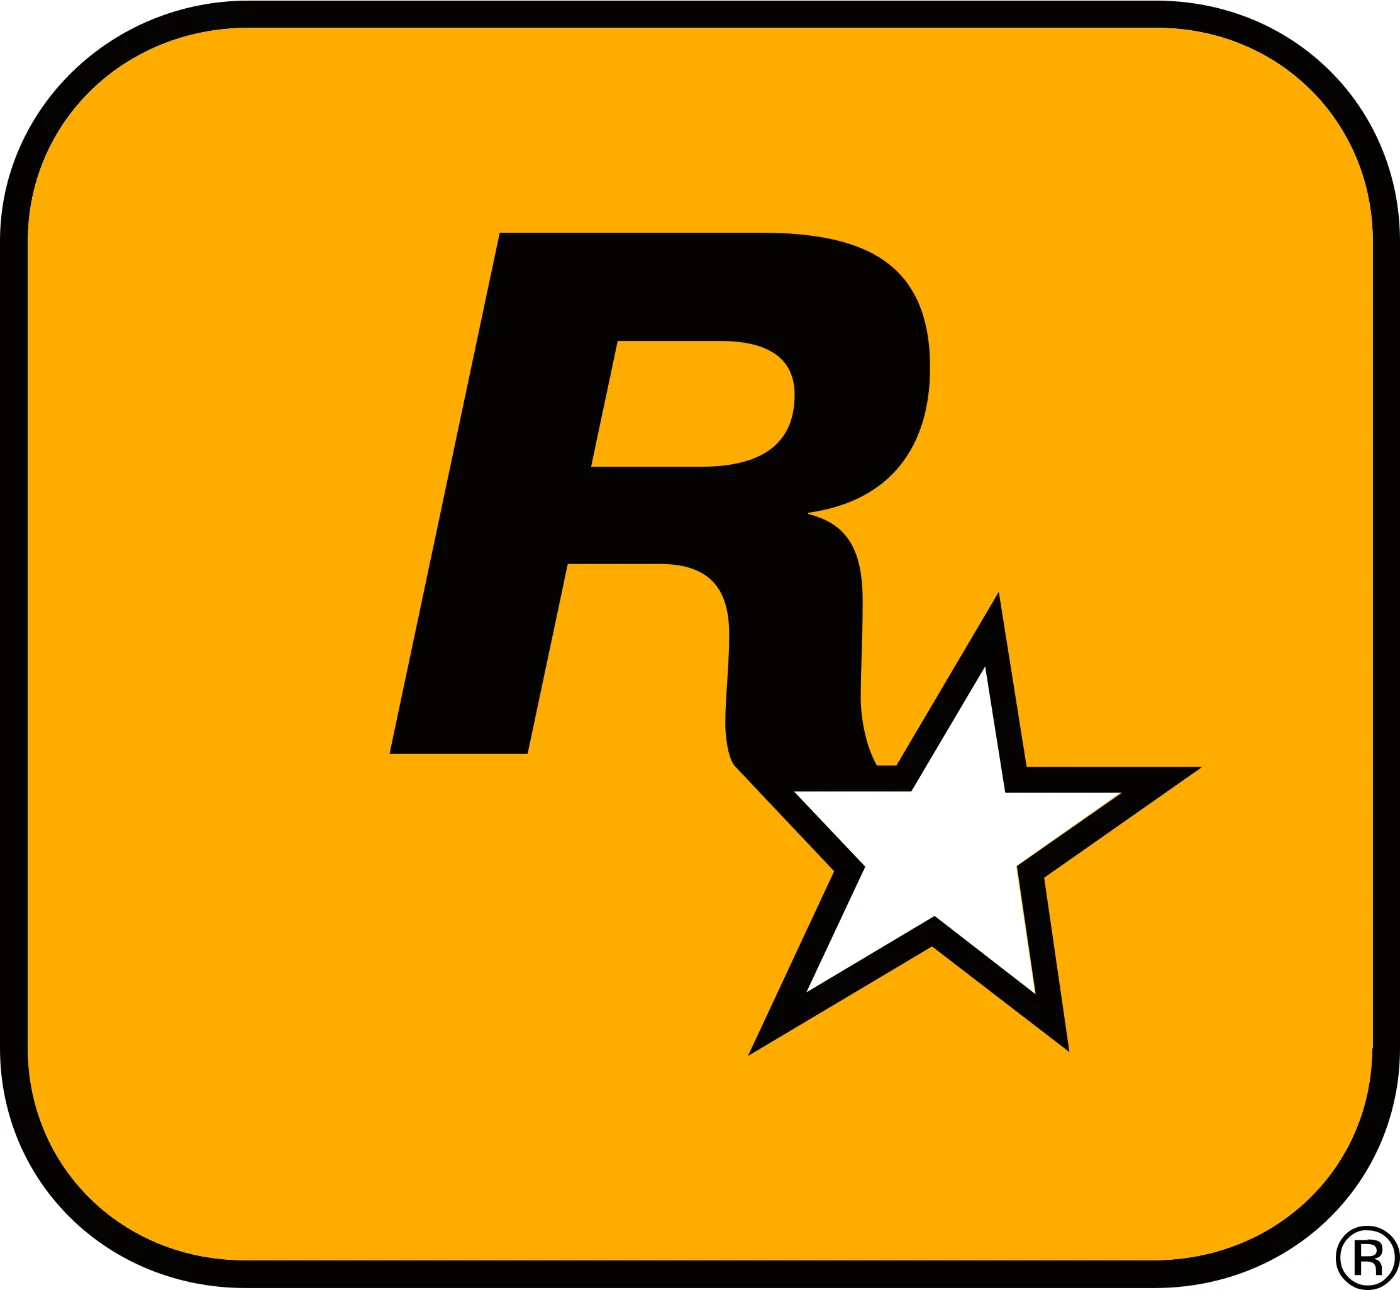 Contas Gta 5 (Campanha, Online E Fivem) Via Rockstar Games L - DFG